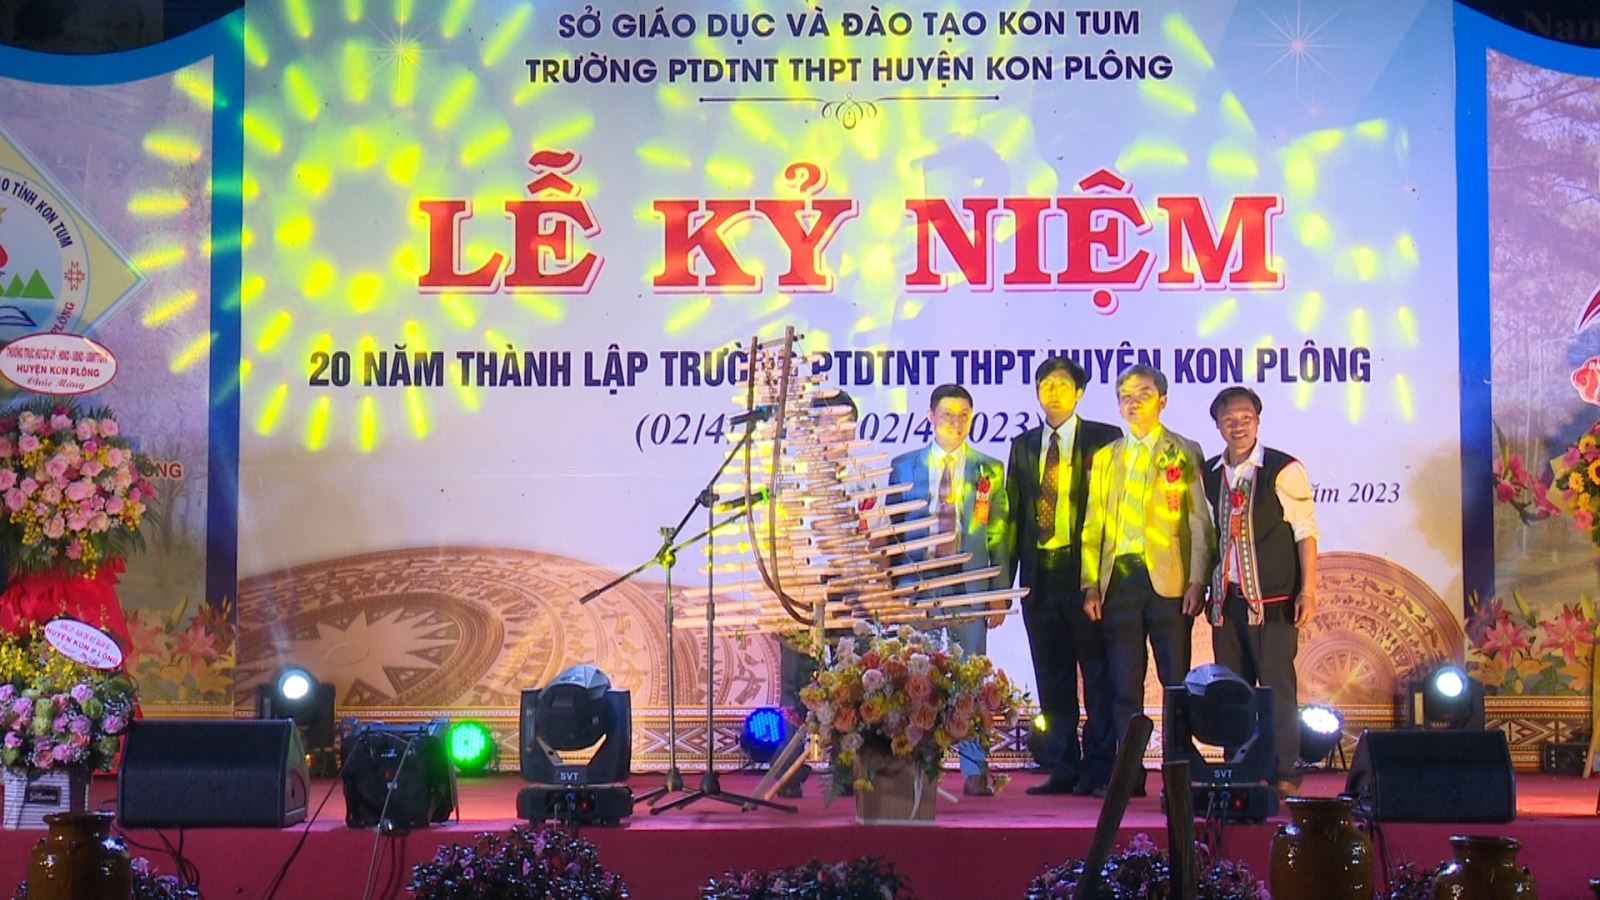 Trường Phổ thông DTNT THPT huyện Kon Plông tổ chức kỷ niệm 20 năm ngày thành lập